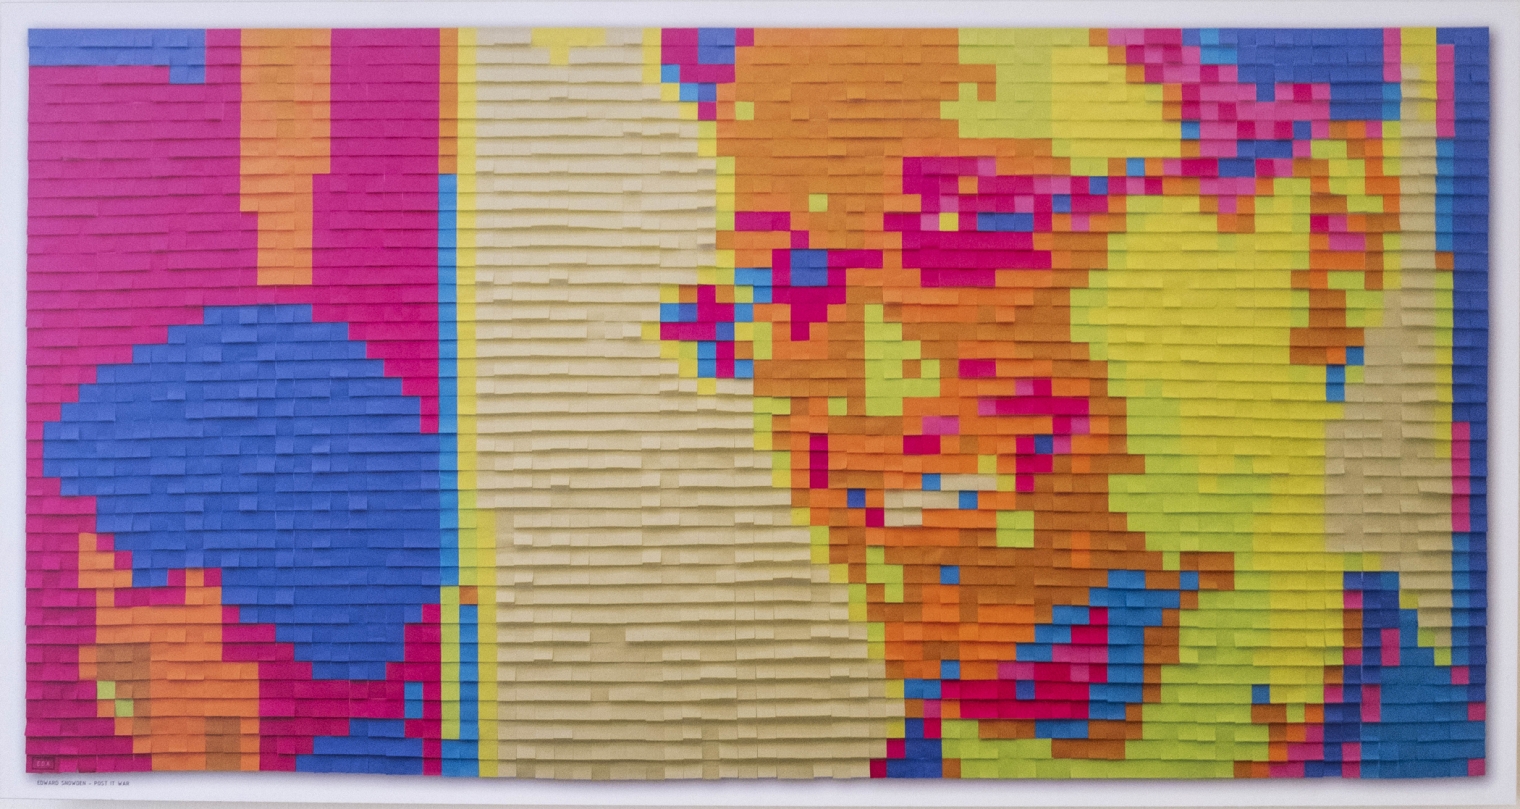 Edward Snowden - Post-it-War, 100 x 50 cm, 2014 C-Print von digitaler Fotografie von 3200 Post its (400 x 200 cm) auf Alu-Dibond